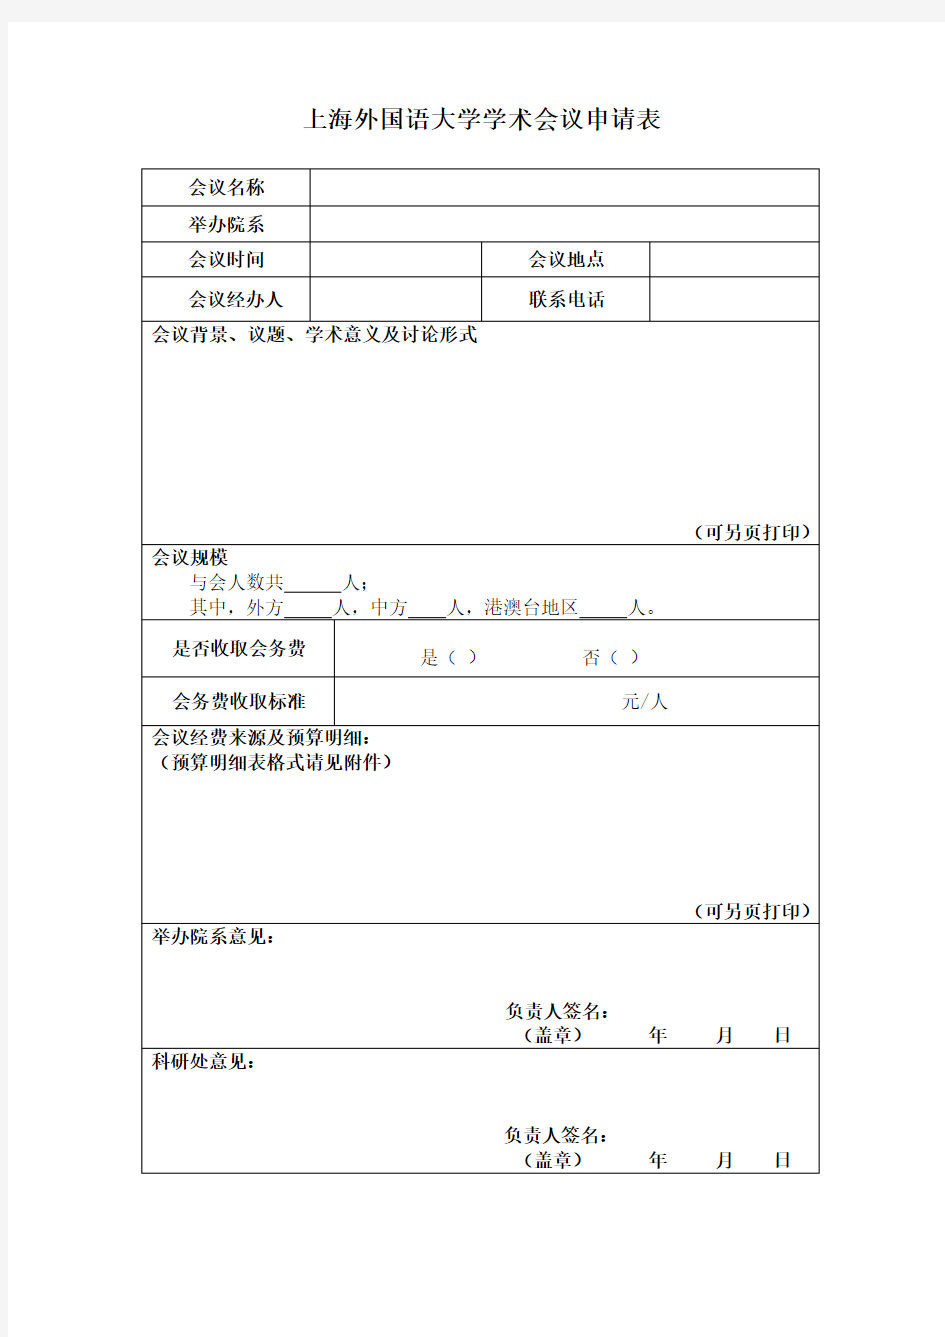 上海外国语大学学术会议申请表